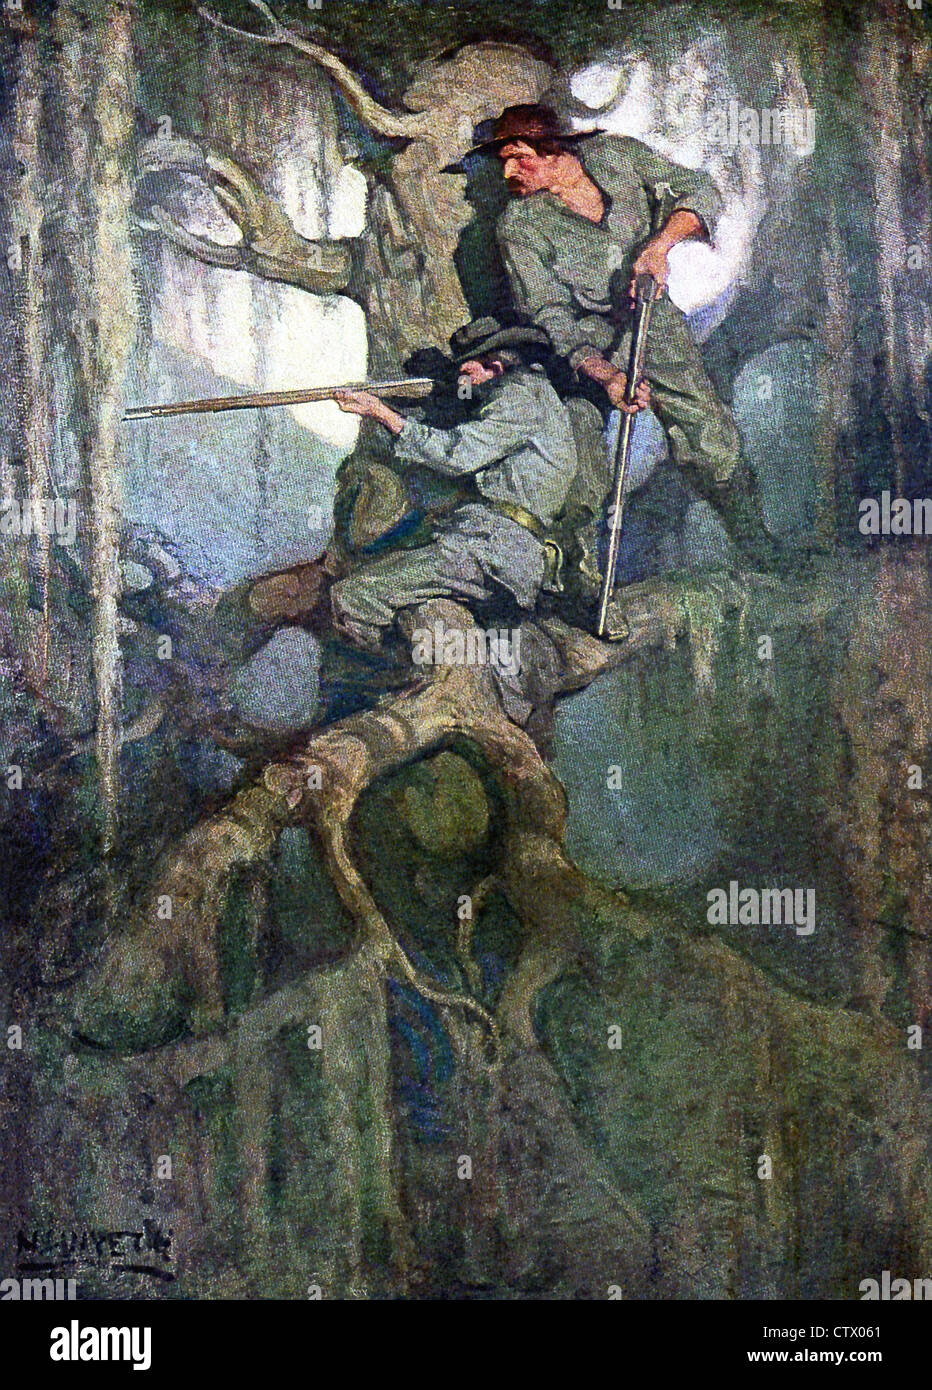 Diese Illustration mit dem Titel Scharfschützen, ist von N.C. Wyeth und erschien nicht mehr brennen, ein Roman von Mary Johnston. Stockfoto